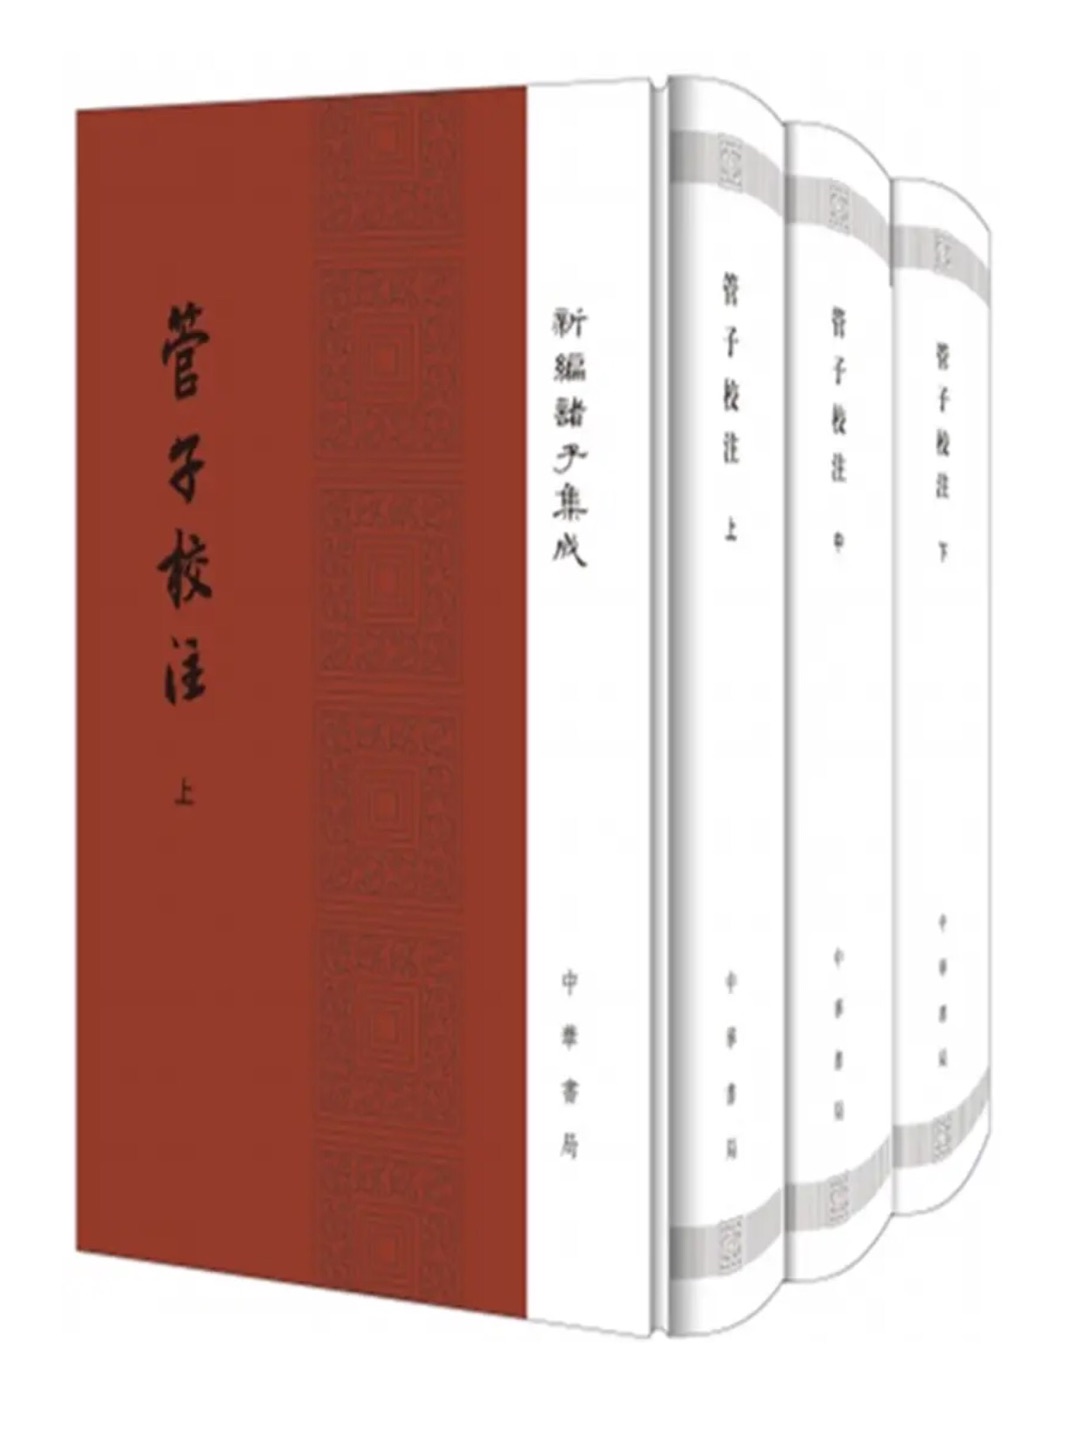 管子是中国第一个经济学家，这部书是他思想的精华，这个版本的注释也很好